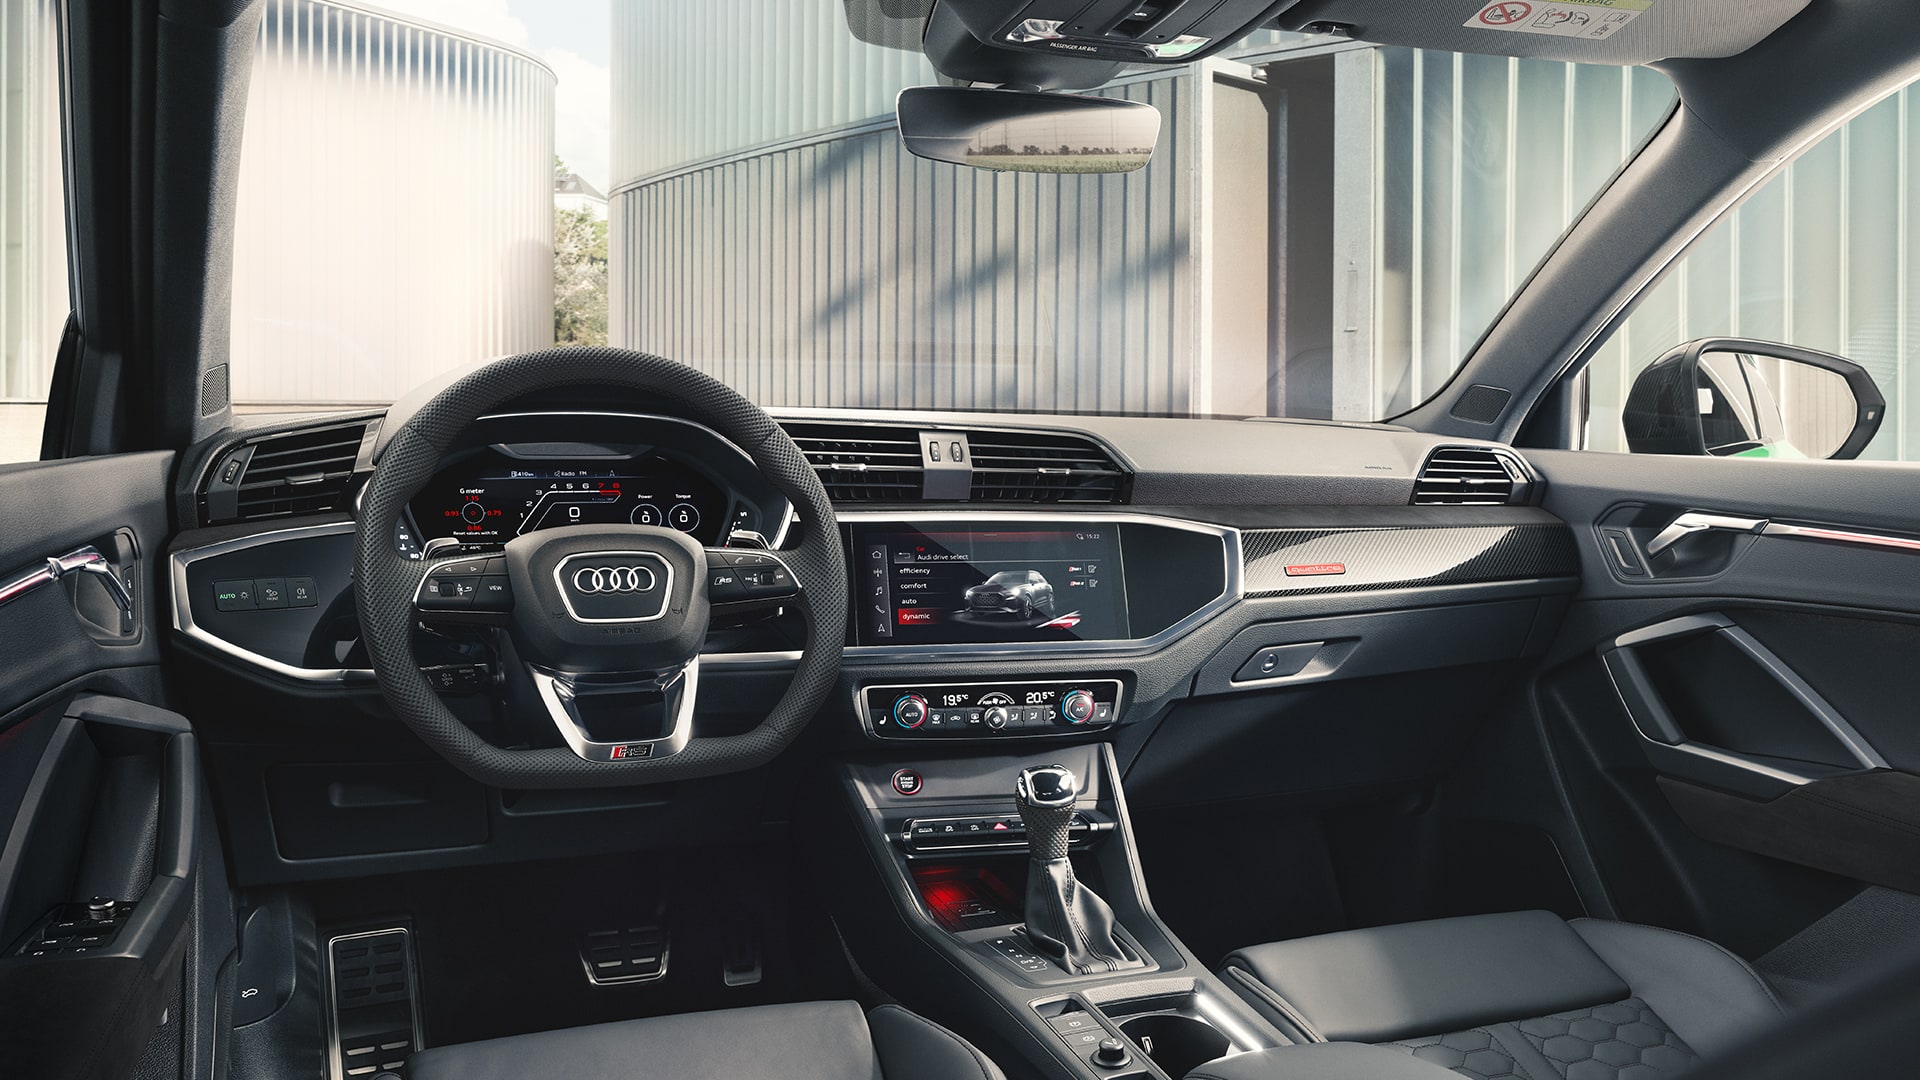 File:Audi RS Q3 Cockpit Interieur Innenraum.JPG - Wikipedia